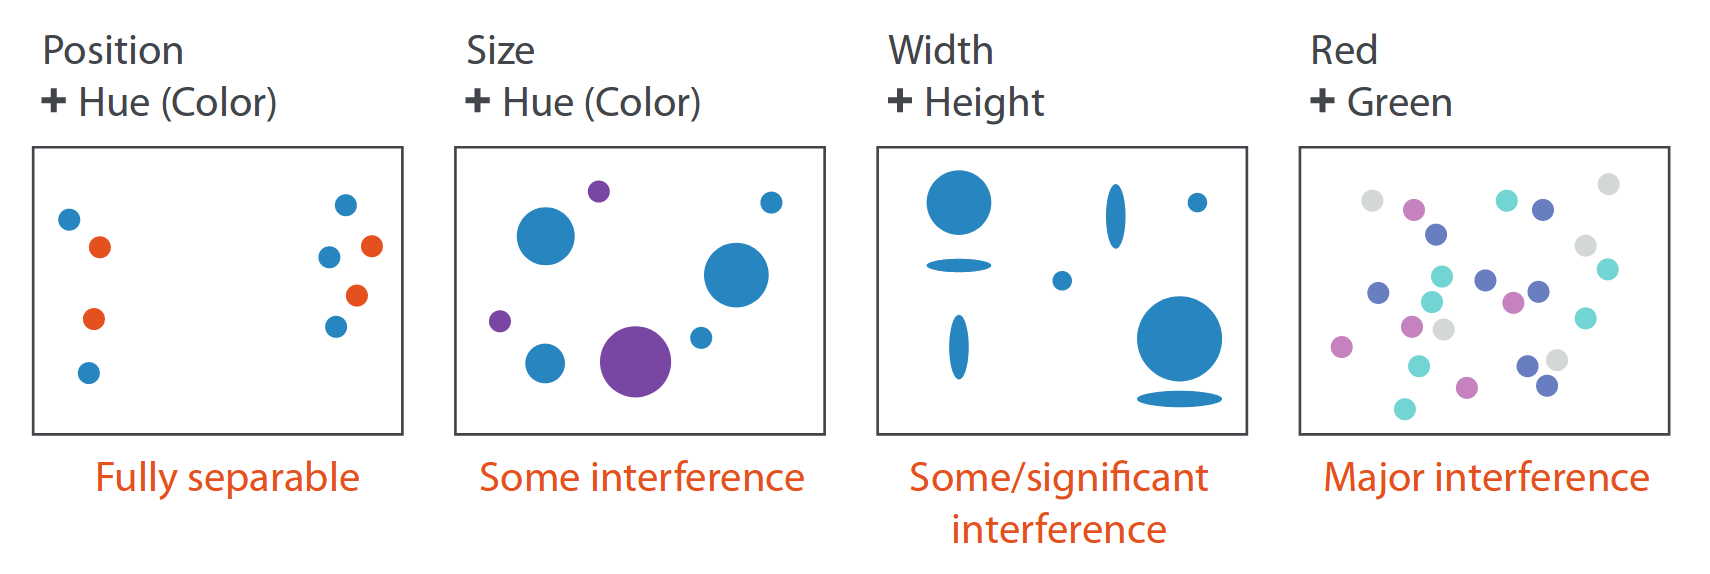 Ejemplos de distintos grados de separabilidad e integridad. Fuente: Visualizacion Analysis & Design.